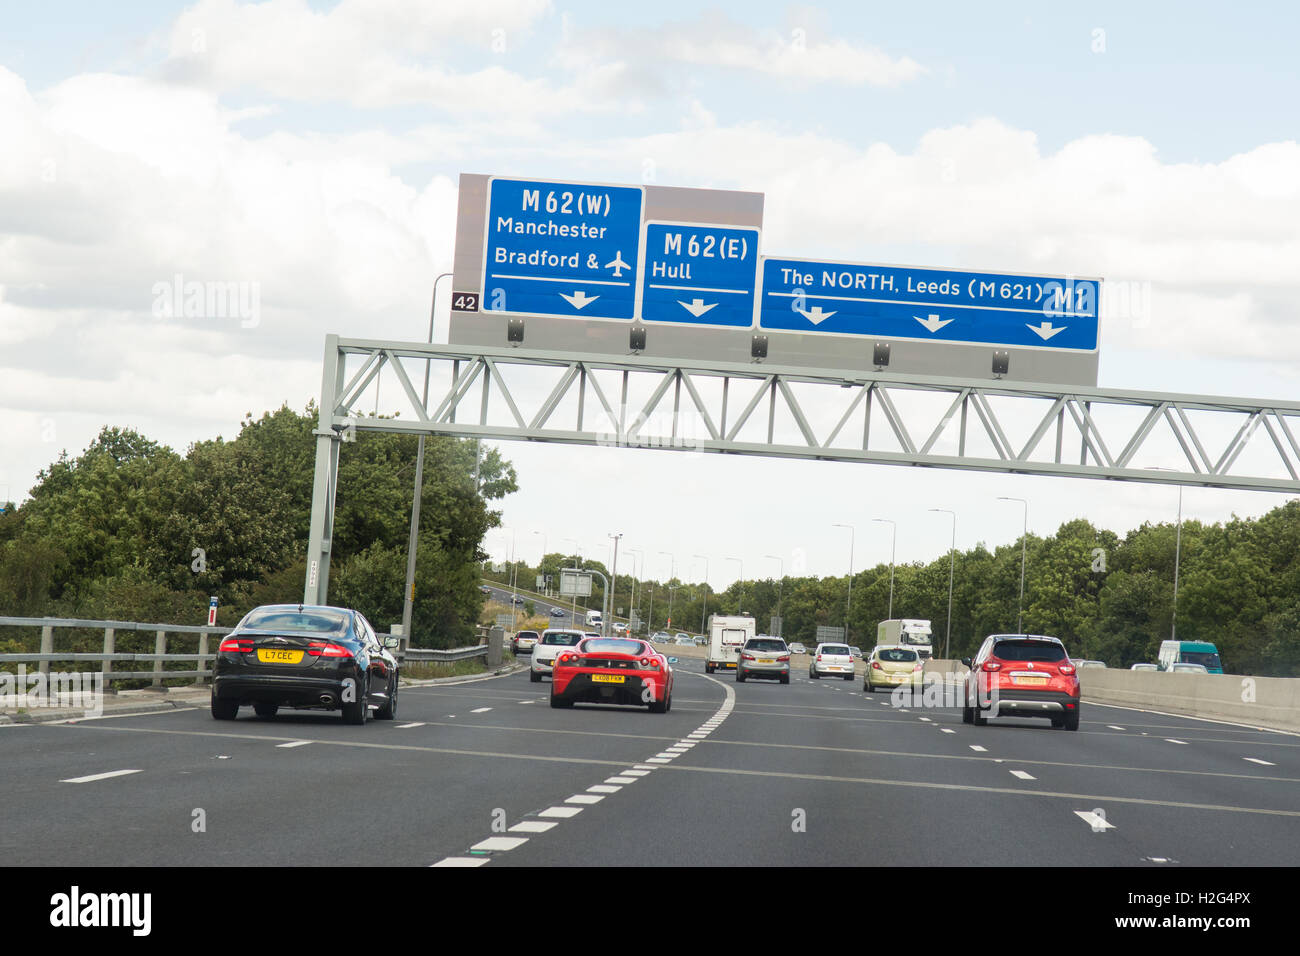 UK-Autobahn Zeichen auf obenliegenden Gantry - Kreuzung 42 der M1 Richtung Norden Stockfoto